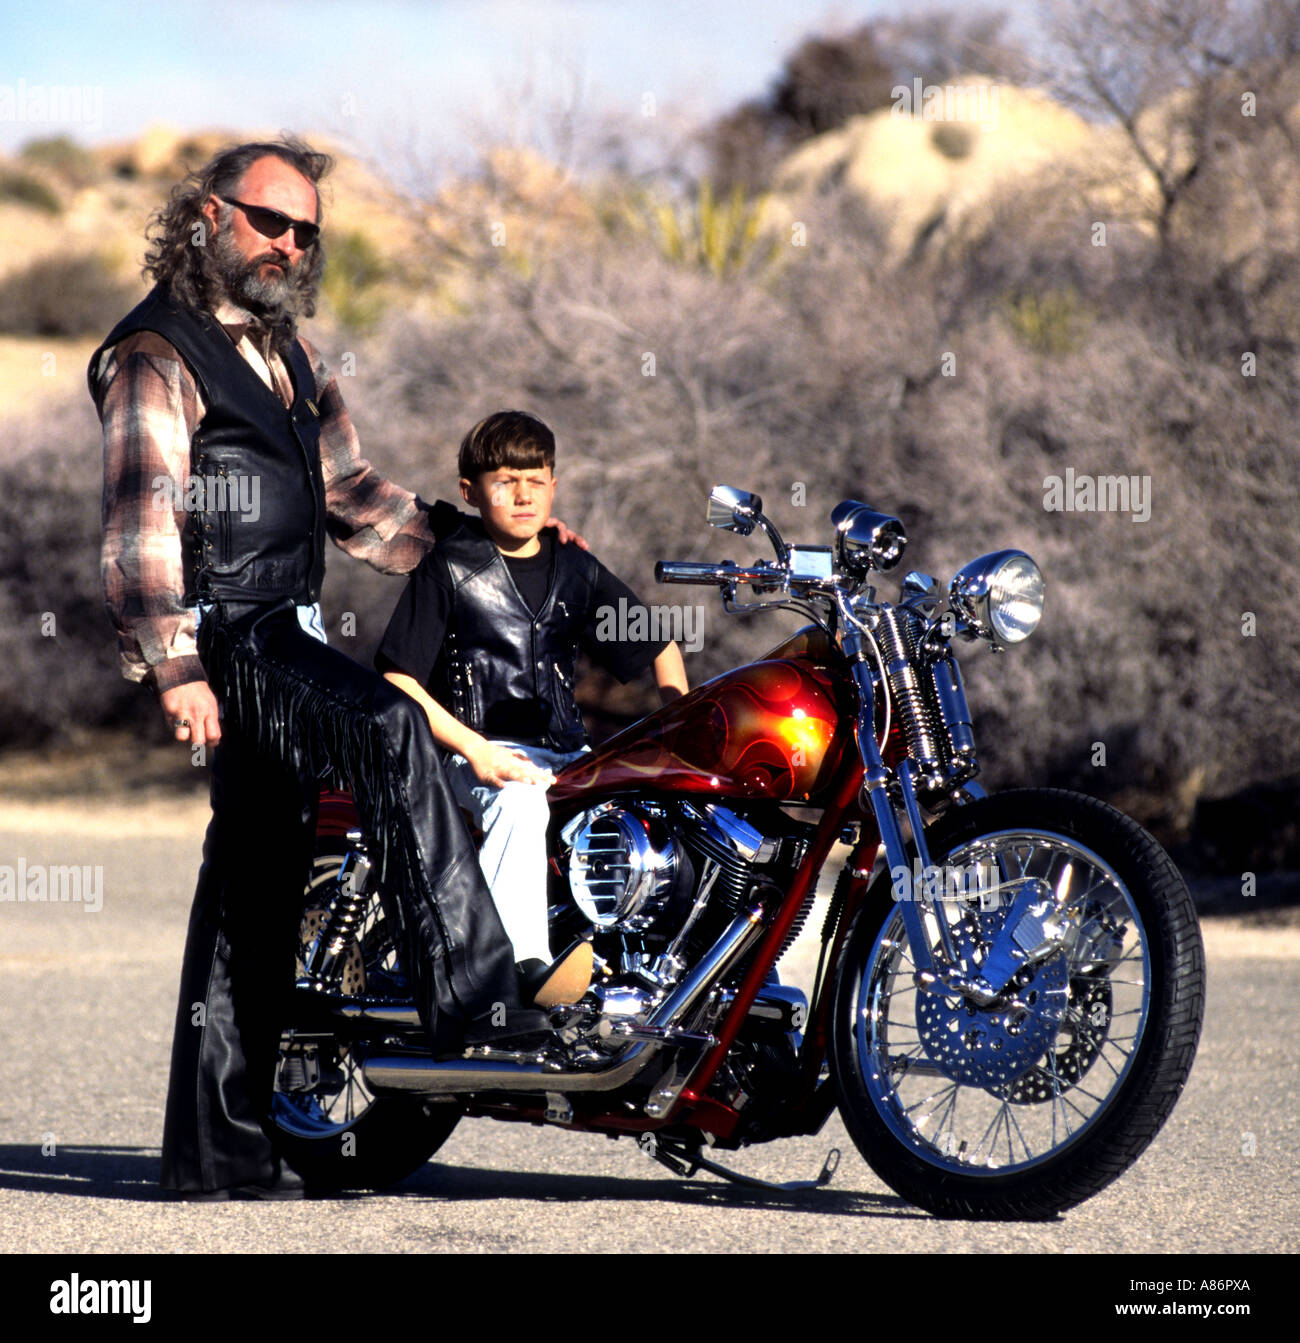 Moto moto Harley Davidson biker personnes père fils homme garçon Banque D'Images